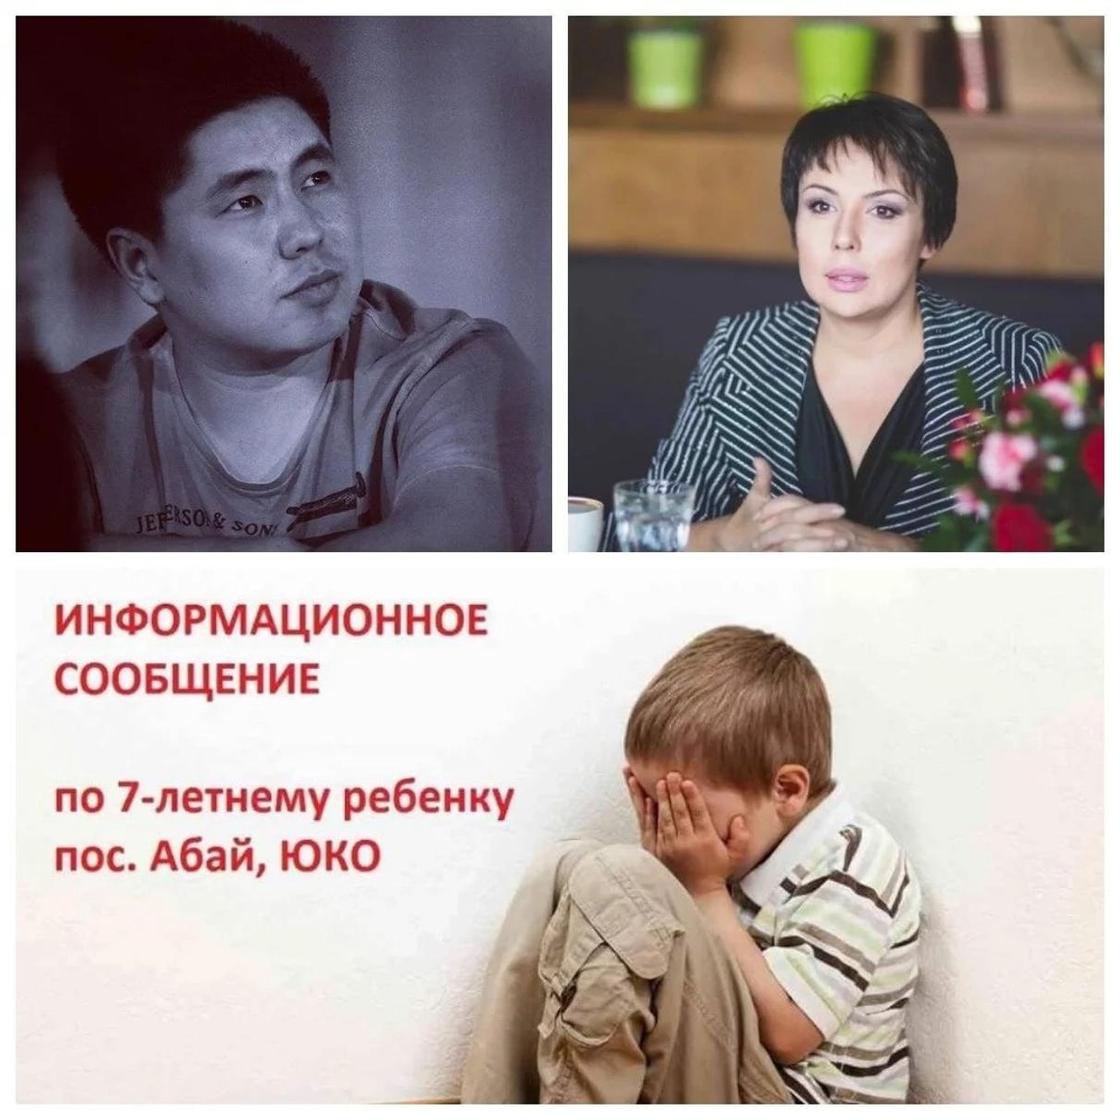 Казахстанских звезды. Фото: Instagram